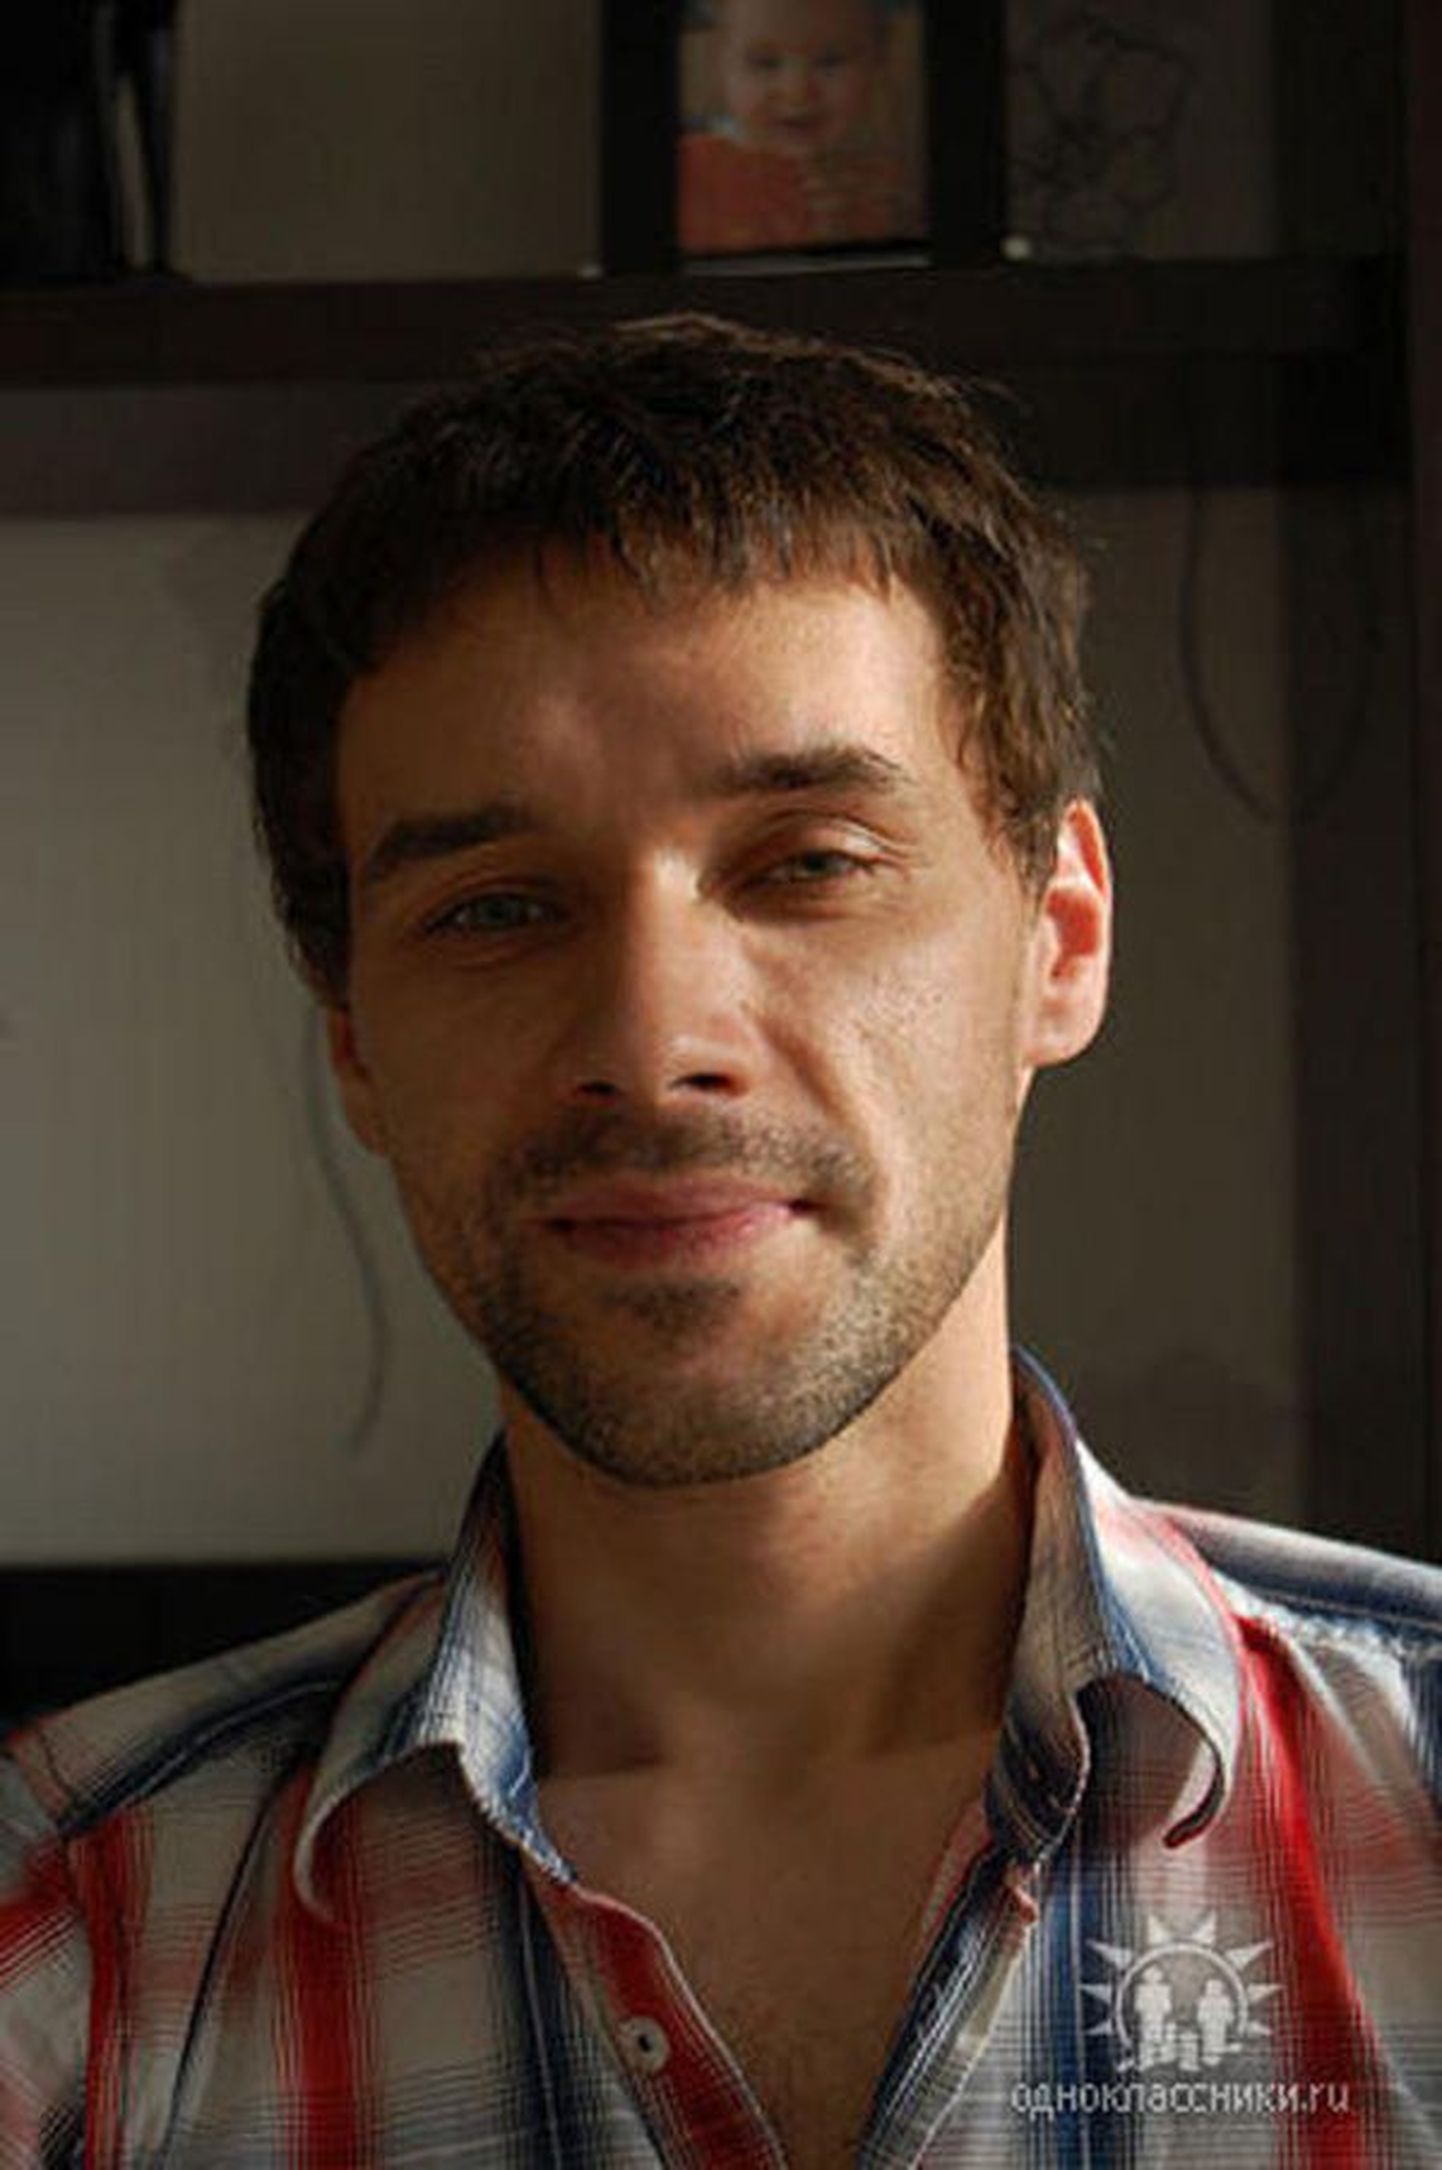 Vjatšeslav Bajuk